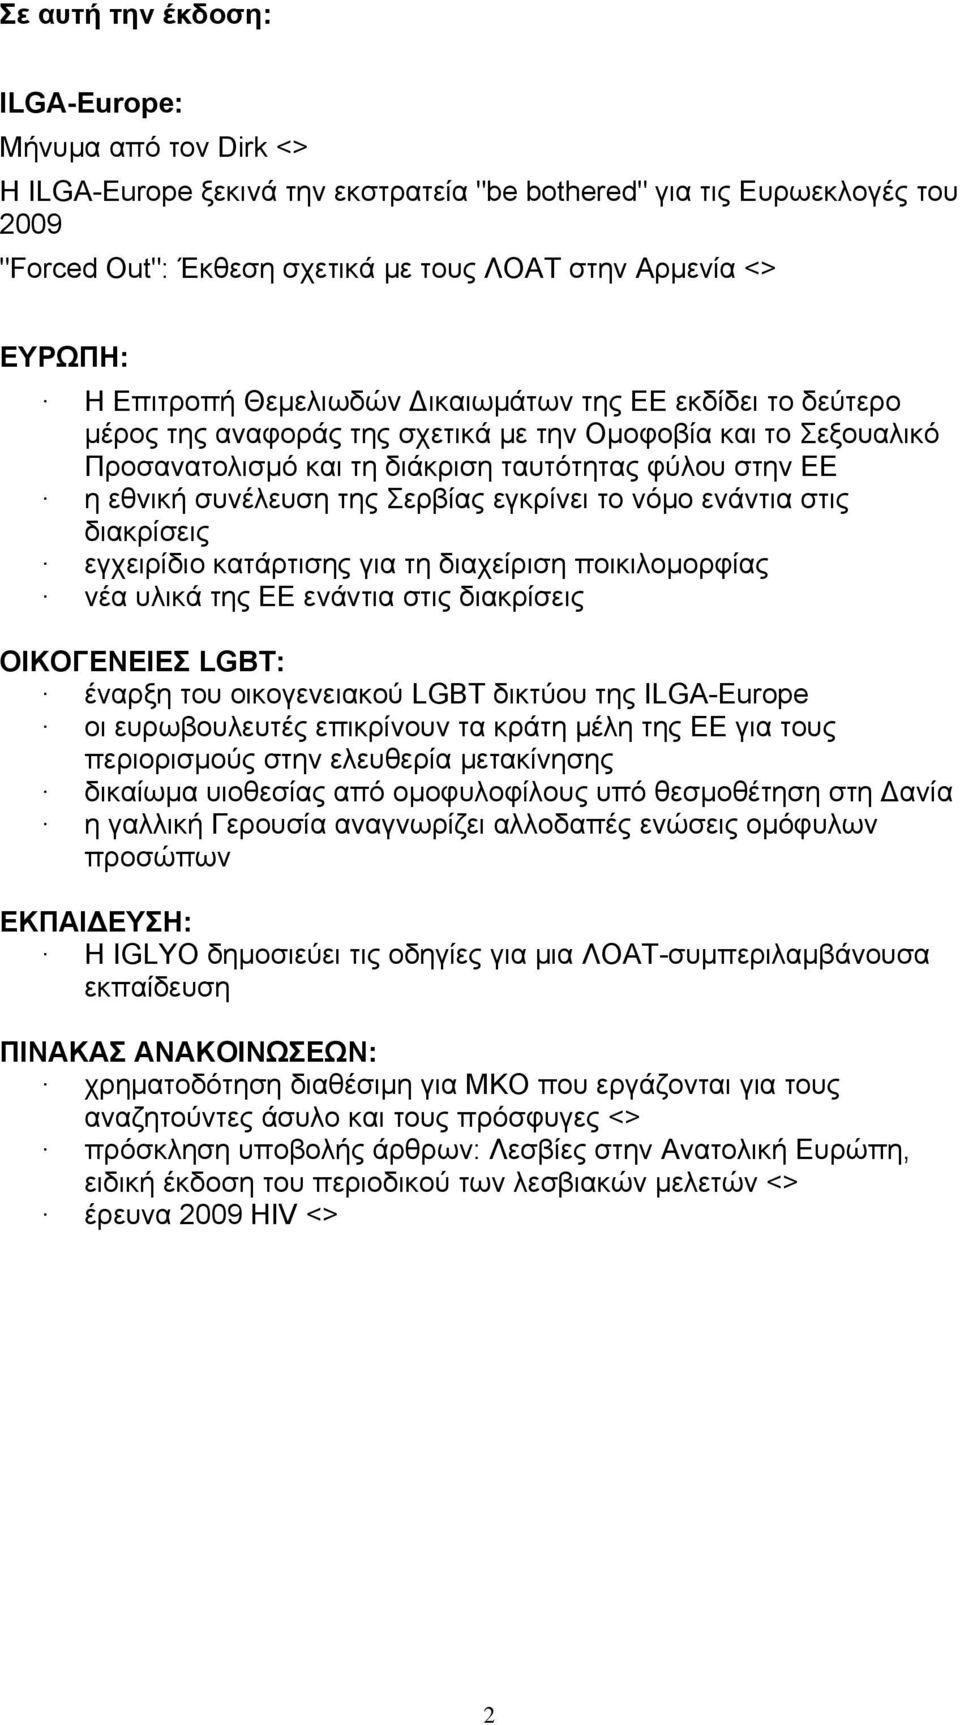 συνέλευση της Σερβίας εγκρίνει το νόμο ενάντια στις διακρίσεις εγχειρίδιο κατάρτισης για τη διαχείριση ποικιλομορφίας νέα υλικά της ΕΕ ενάντια στις διακρίσεις ΟΙΚΟΓΕΝΕΙΕΣ LGBT: έναρξη του